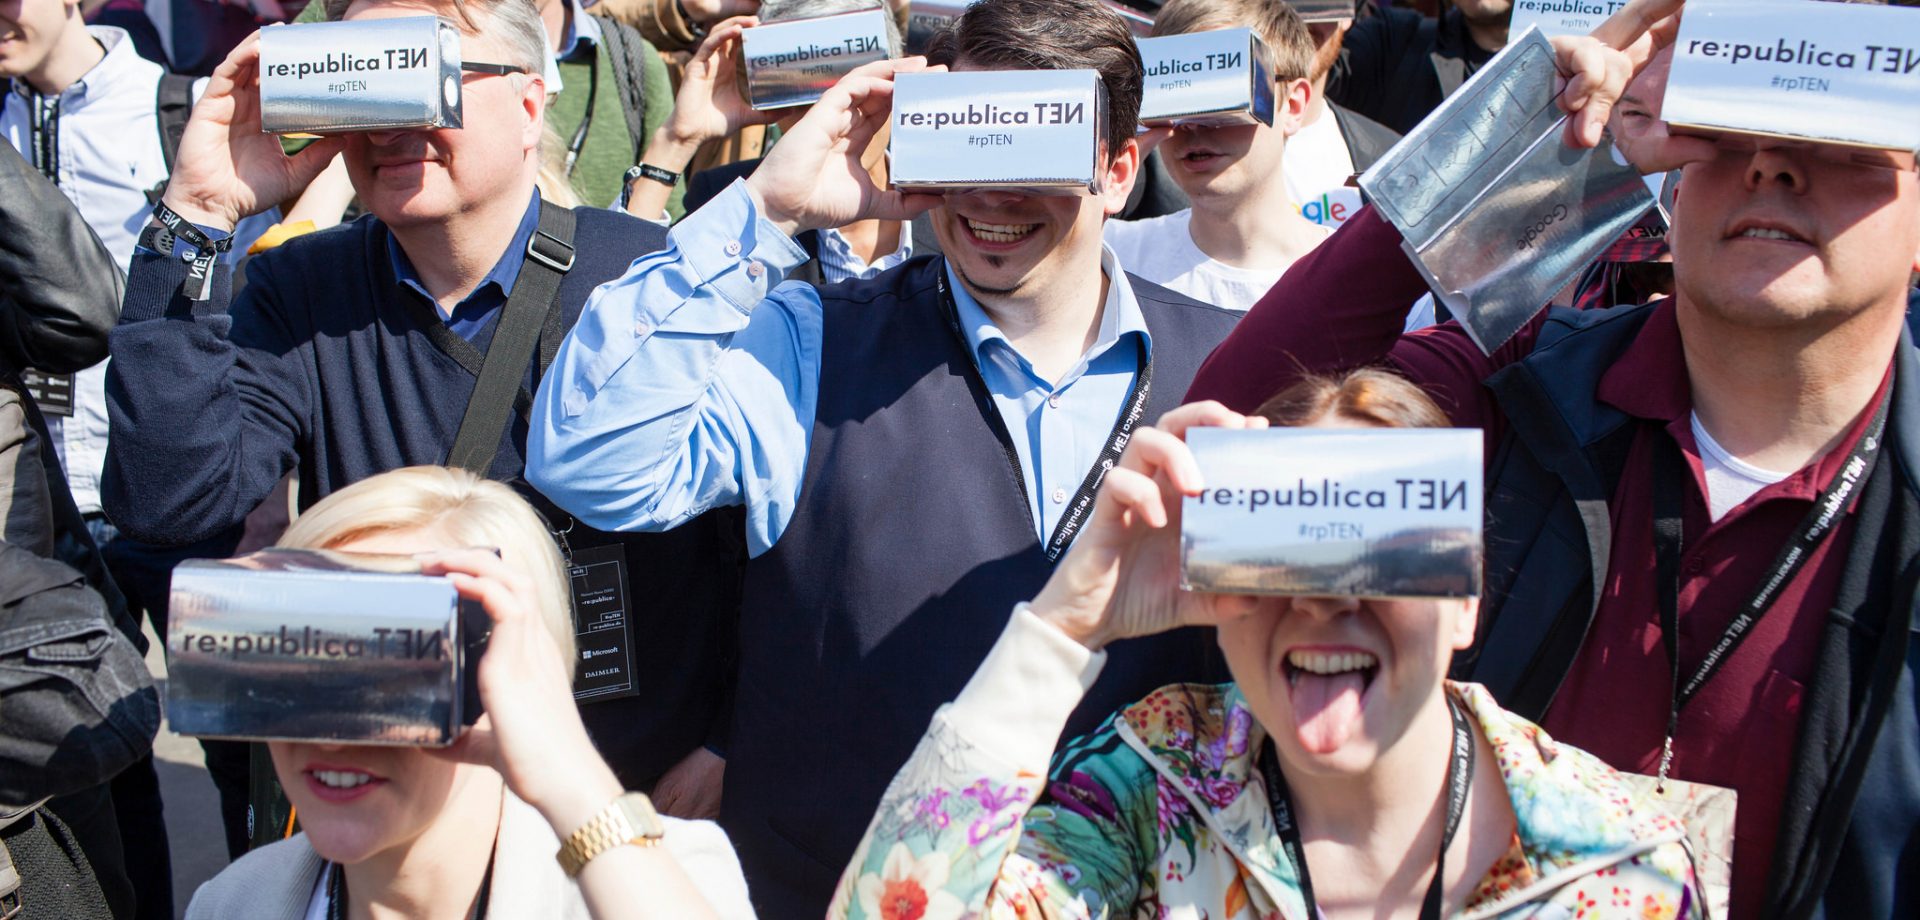 Besucher beim Google Cardboard Flashmob am 03.05.2016 auf der re:publica in Berlin. Foto: re:publica/Jan Zappner CC BY 2.0